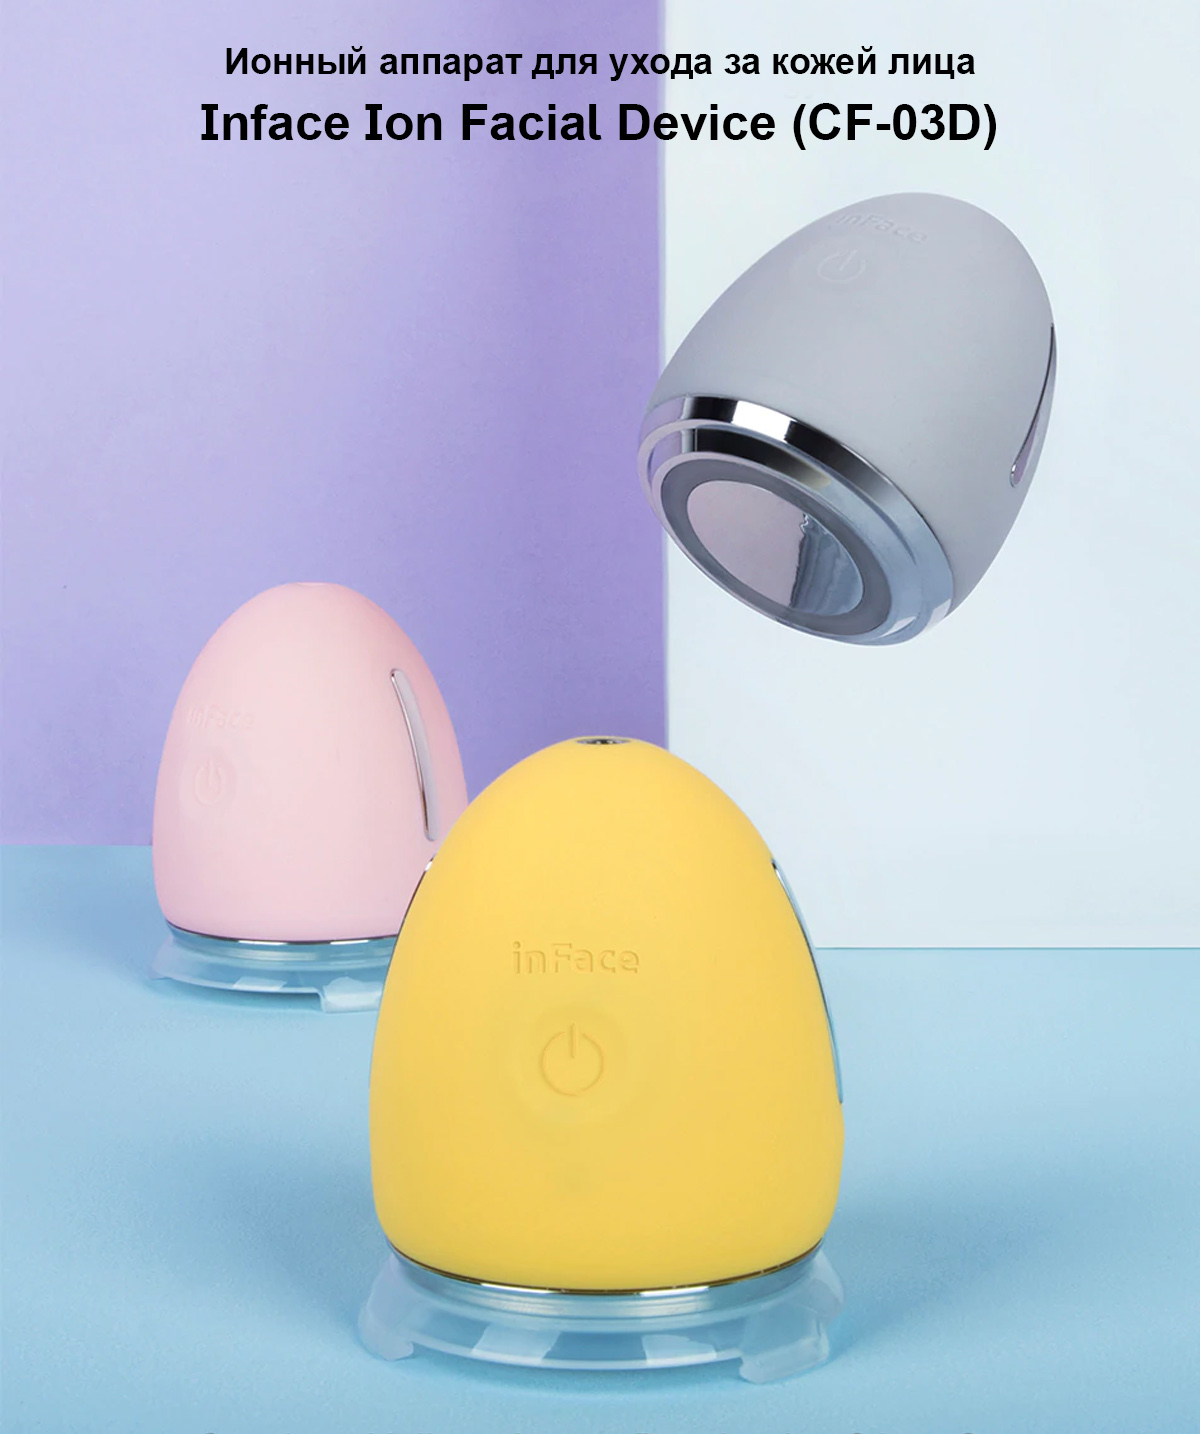 Ионный аппарат для ухода за кожей лица Inface Ion Facial Device (CF-03D)